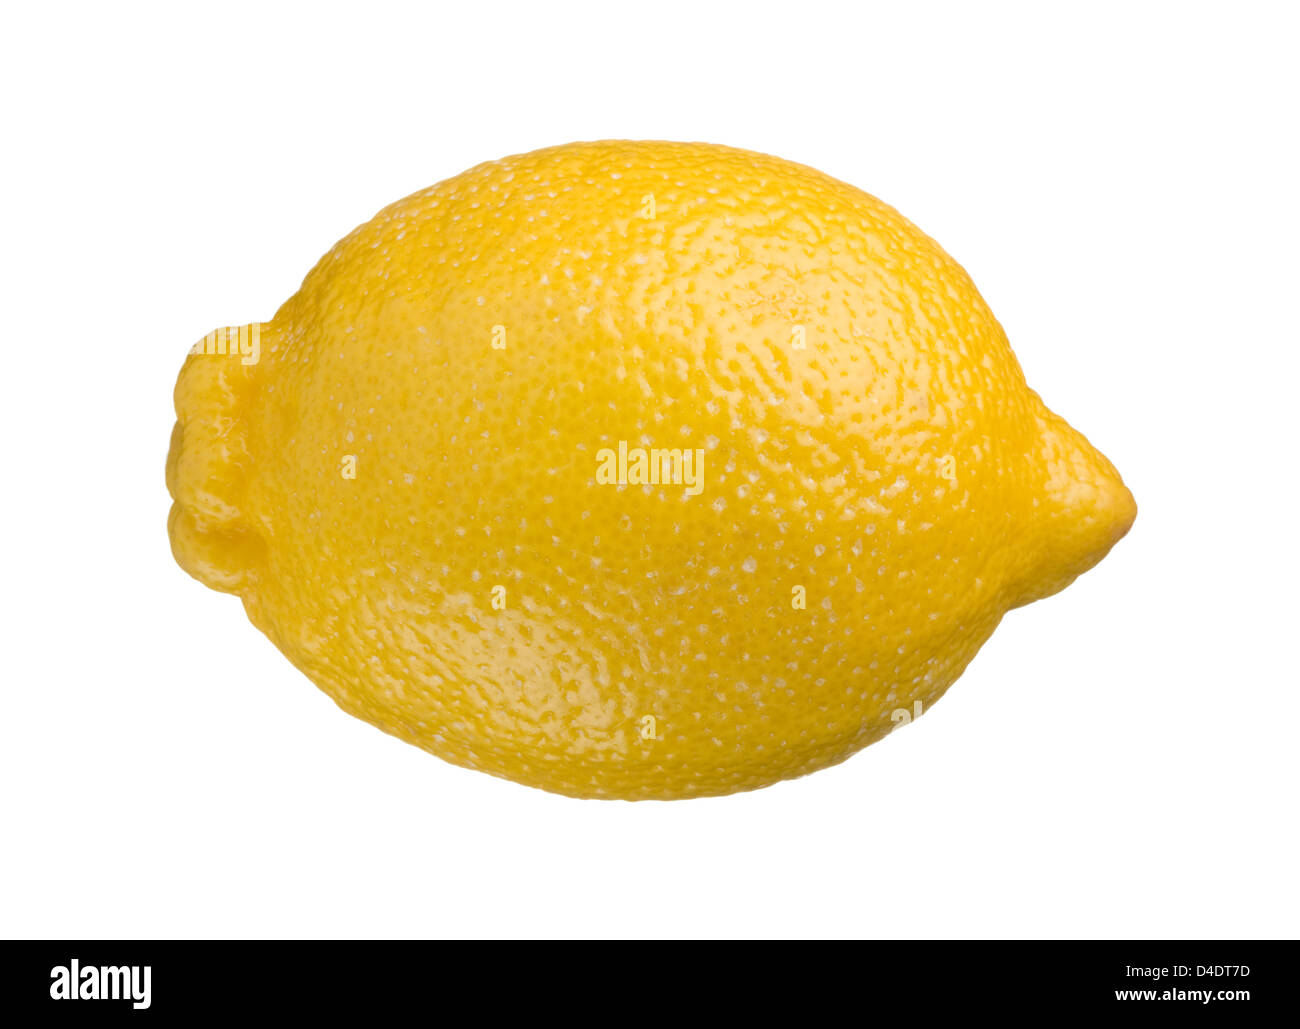 Un limón entero aislado sobre fondo blanco. Foto de stock